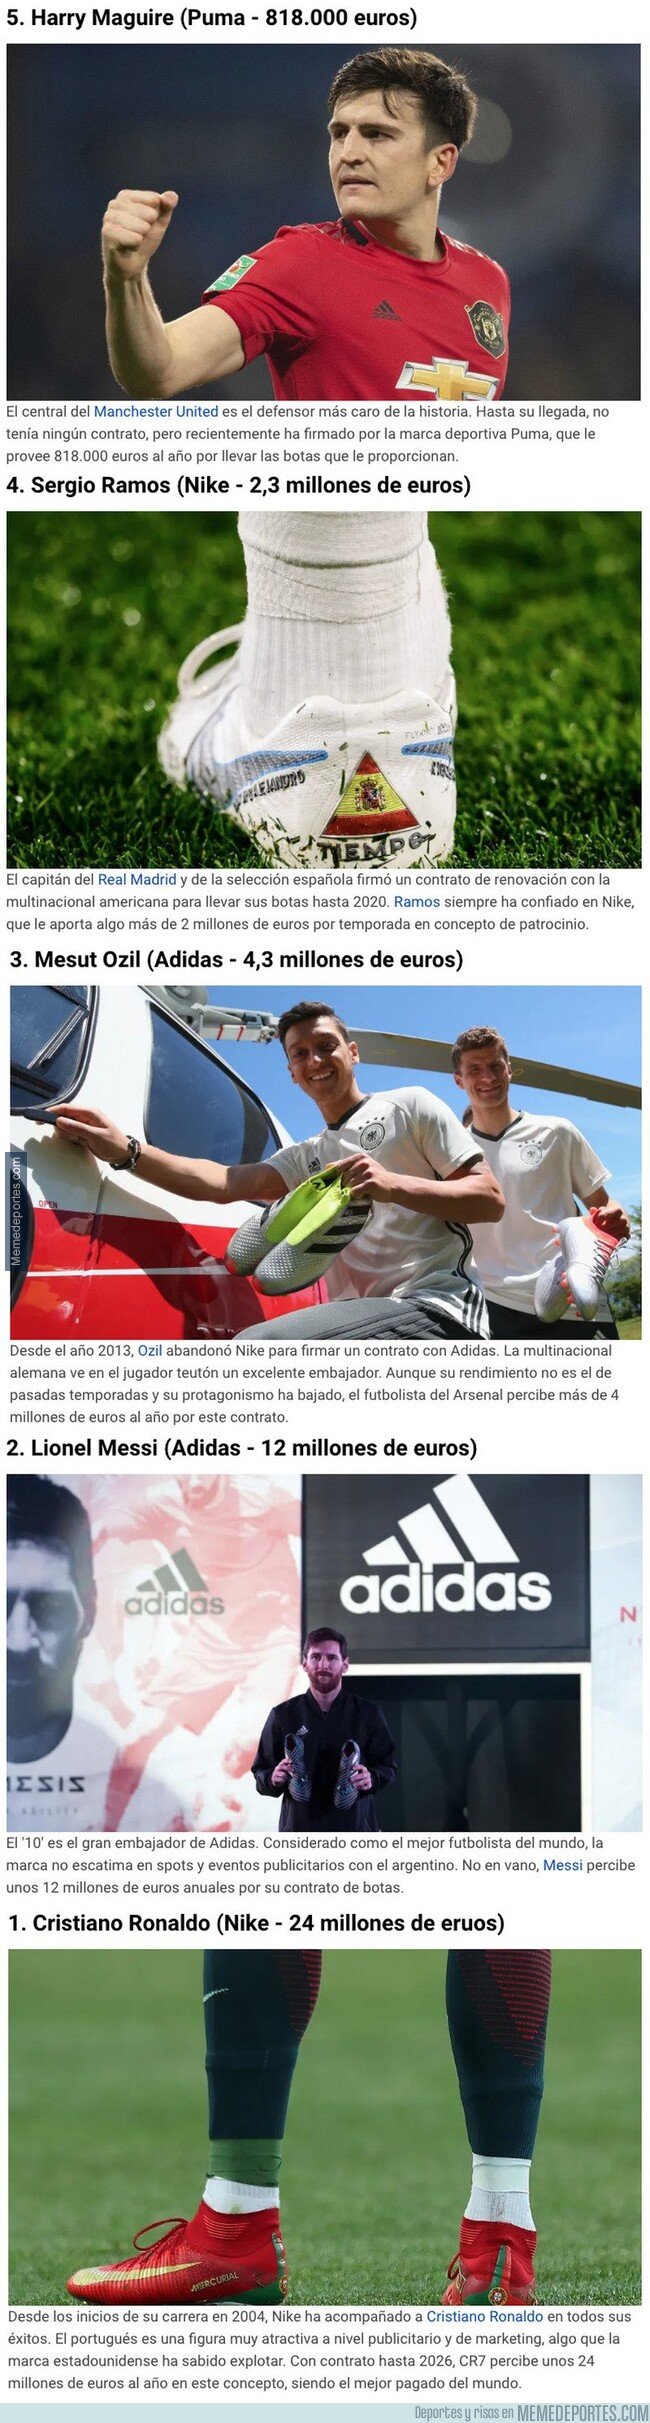 1091072 - Los futbolistas que más dinero ganan por el patrocinio de sus botas